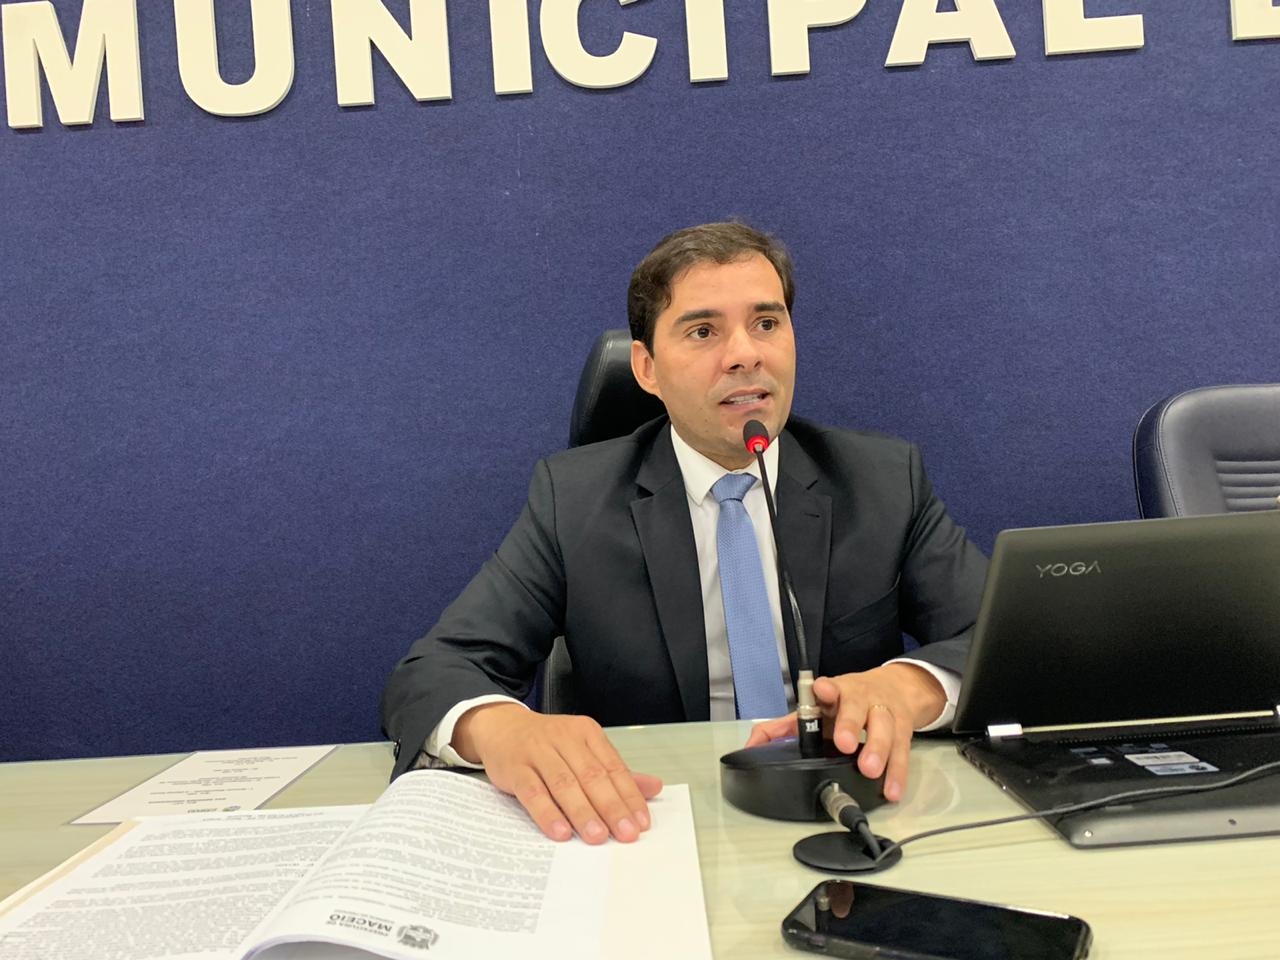 Photo of PRODUTIVIDADE! – Câmara Municipal de Maceió promulga 4 novas leis que beneficiarão a população maceioense